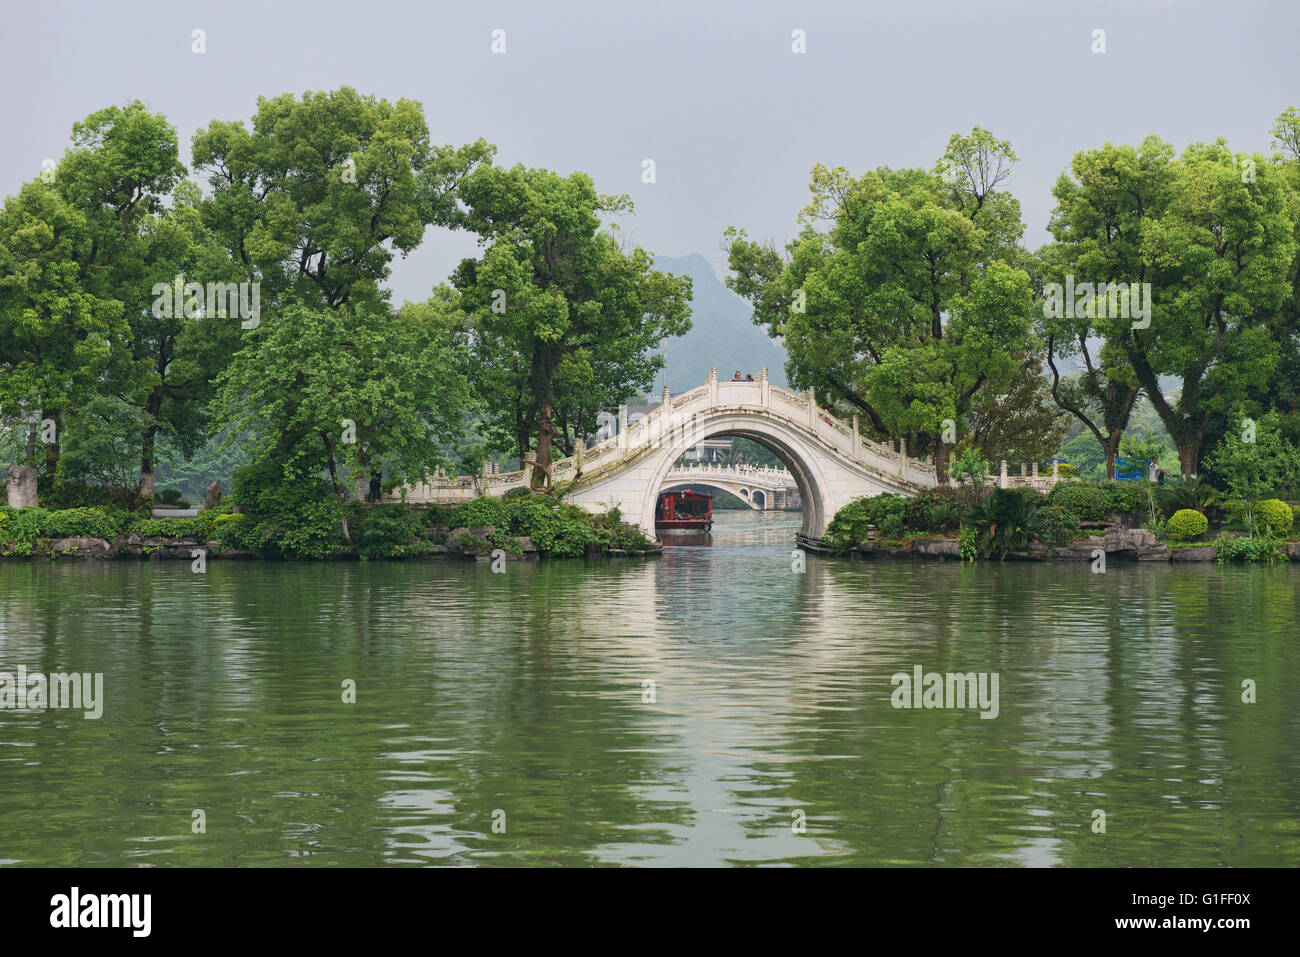 Arche de pierre brdge traditionnel sur le lac Banyan, Guilin, Chine, région autonome du Guangxi Banque D'Images